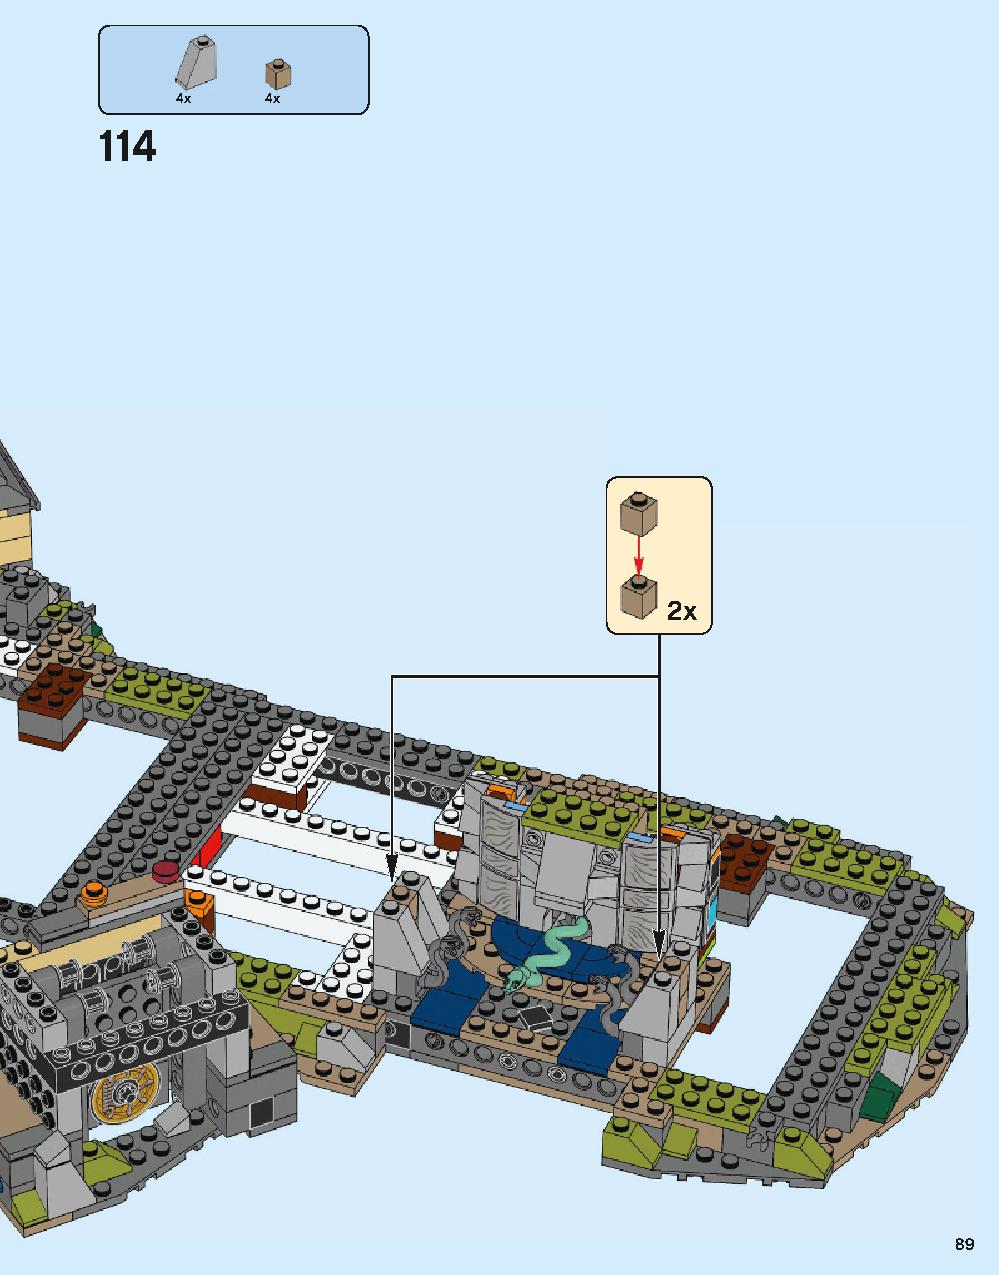 ホグワーツ城 71043 レゴの商品情報 レゴの説明書・組立方法 89 page